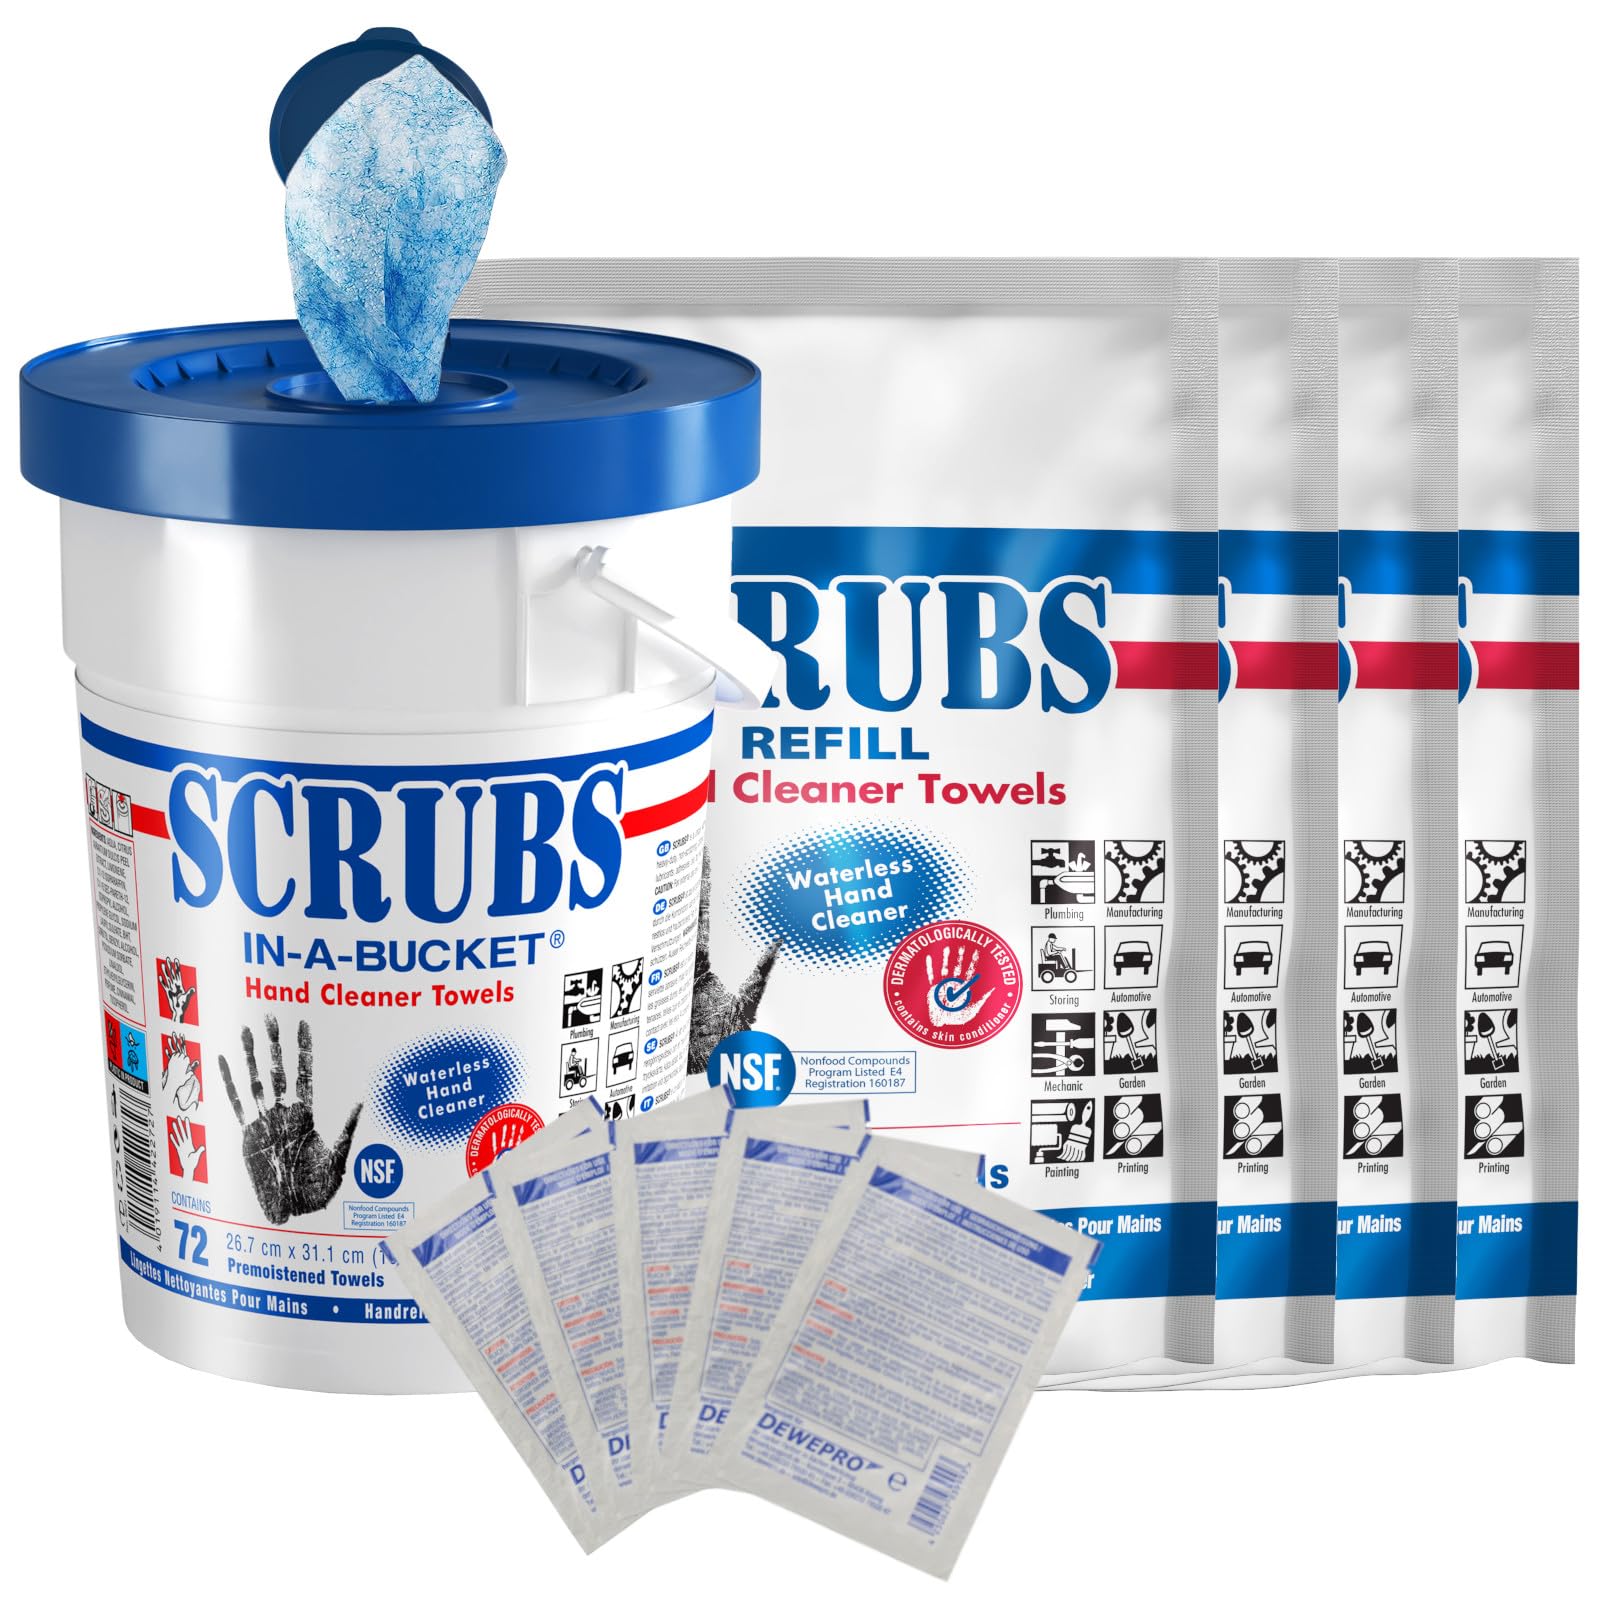 SCRUBS in-a-bucket mit 4 nachhaltigen SCRUBS Refill Nachfüllpacks mit je 72 Stück Handreinigungstücher inkl. 5 St. DEWEPRO® SingleScrubs